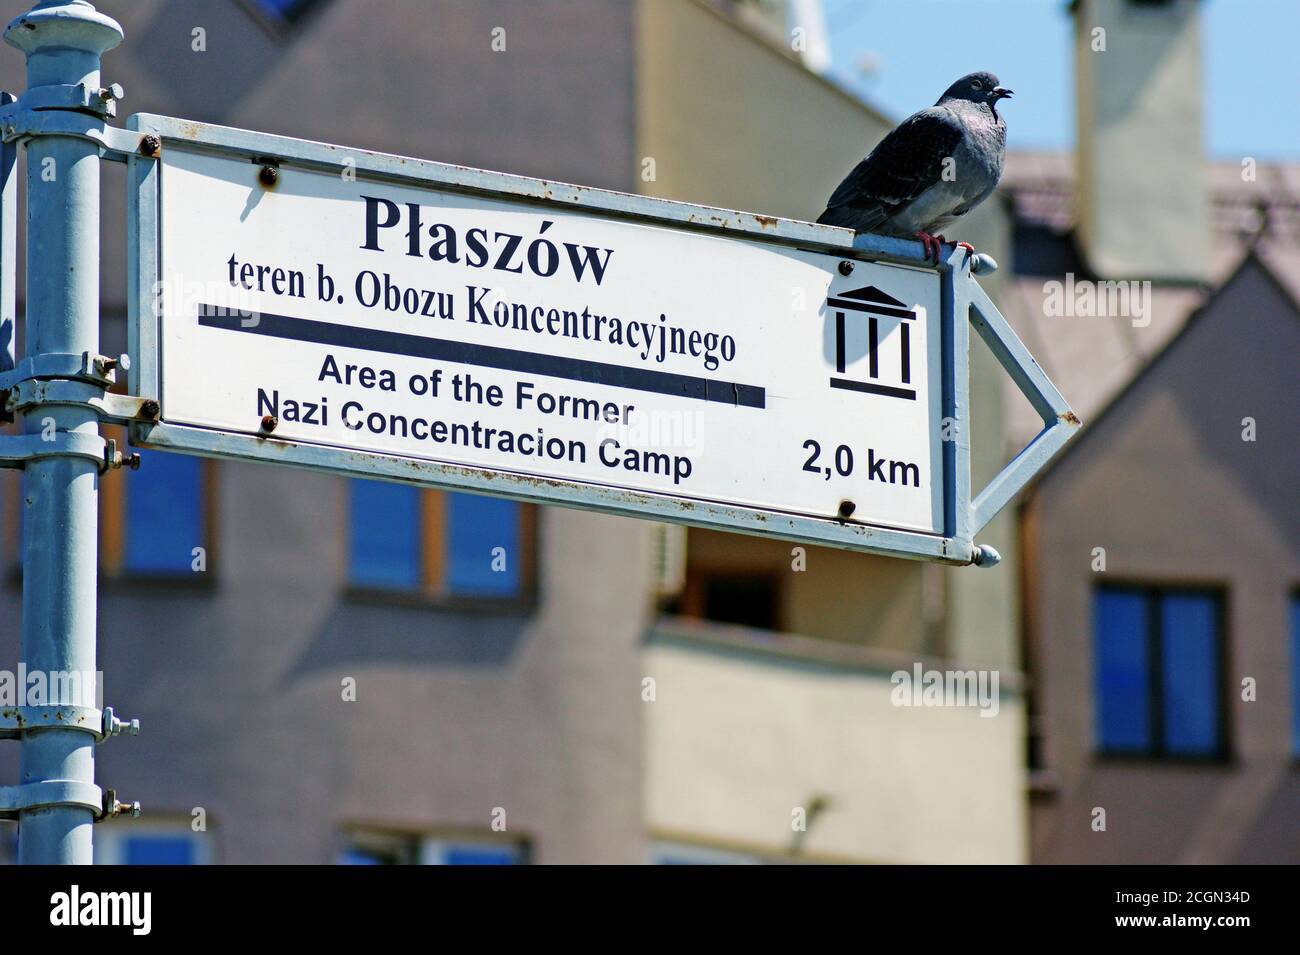 Un pigeon de la famille des Columbidae se trouve au sommet d'un panneau à Cracovie, en Pologne, pointant vers Plaszow, une banlieue connue pour un ancien camp de concentration nazi. Banque D'Images